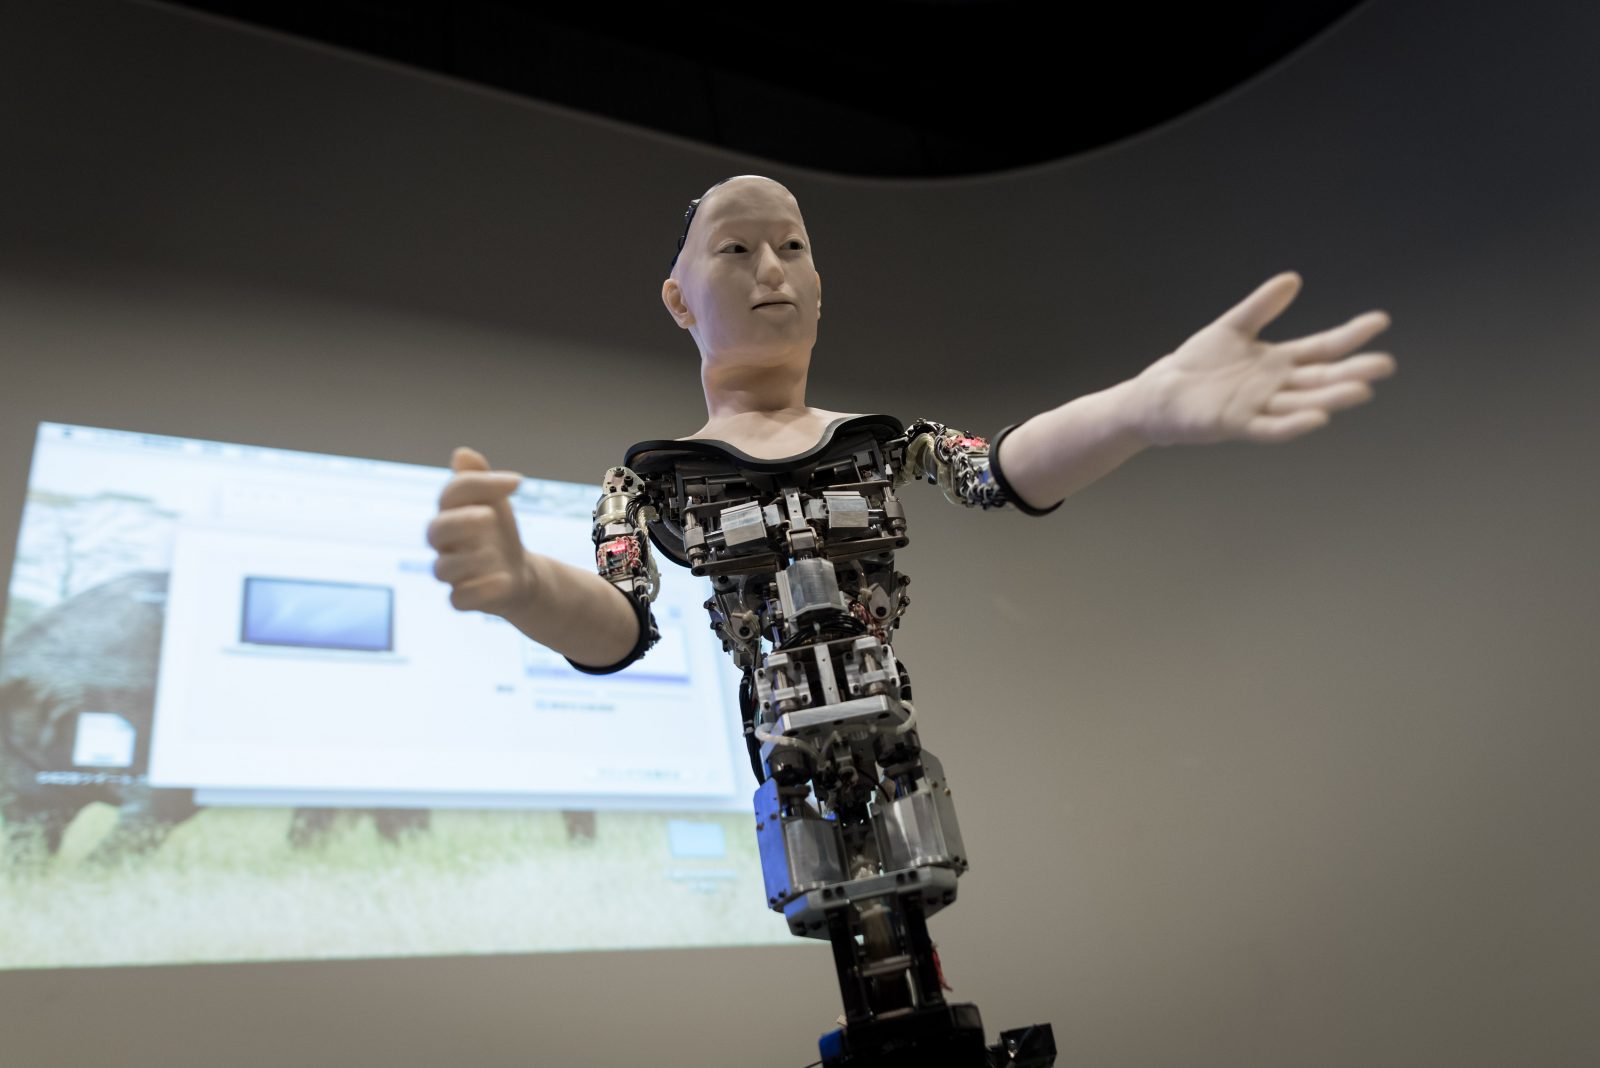 Izložba o humanoidu Alteru predstavljena u Nacionalnom muzeju nauke u Tokiju, u Japanu, danas je zatvorena. Robot Alter ima niz senzora i elektronskih signala sličnih neuronskoj mreži u ljudskom mozgu zbog čega može imitirati pojedine ljudske pokrete. ( Nicolas Datiche - Anadolu Agency )